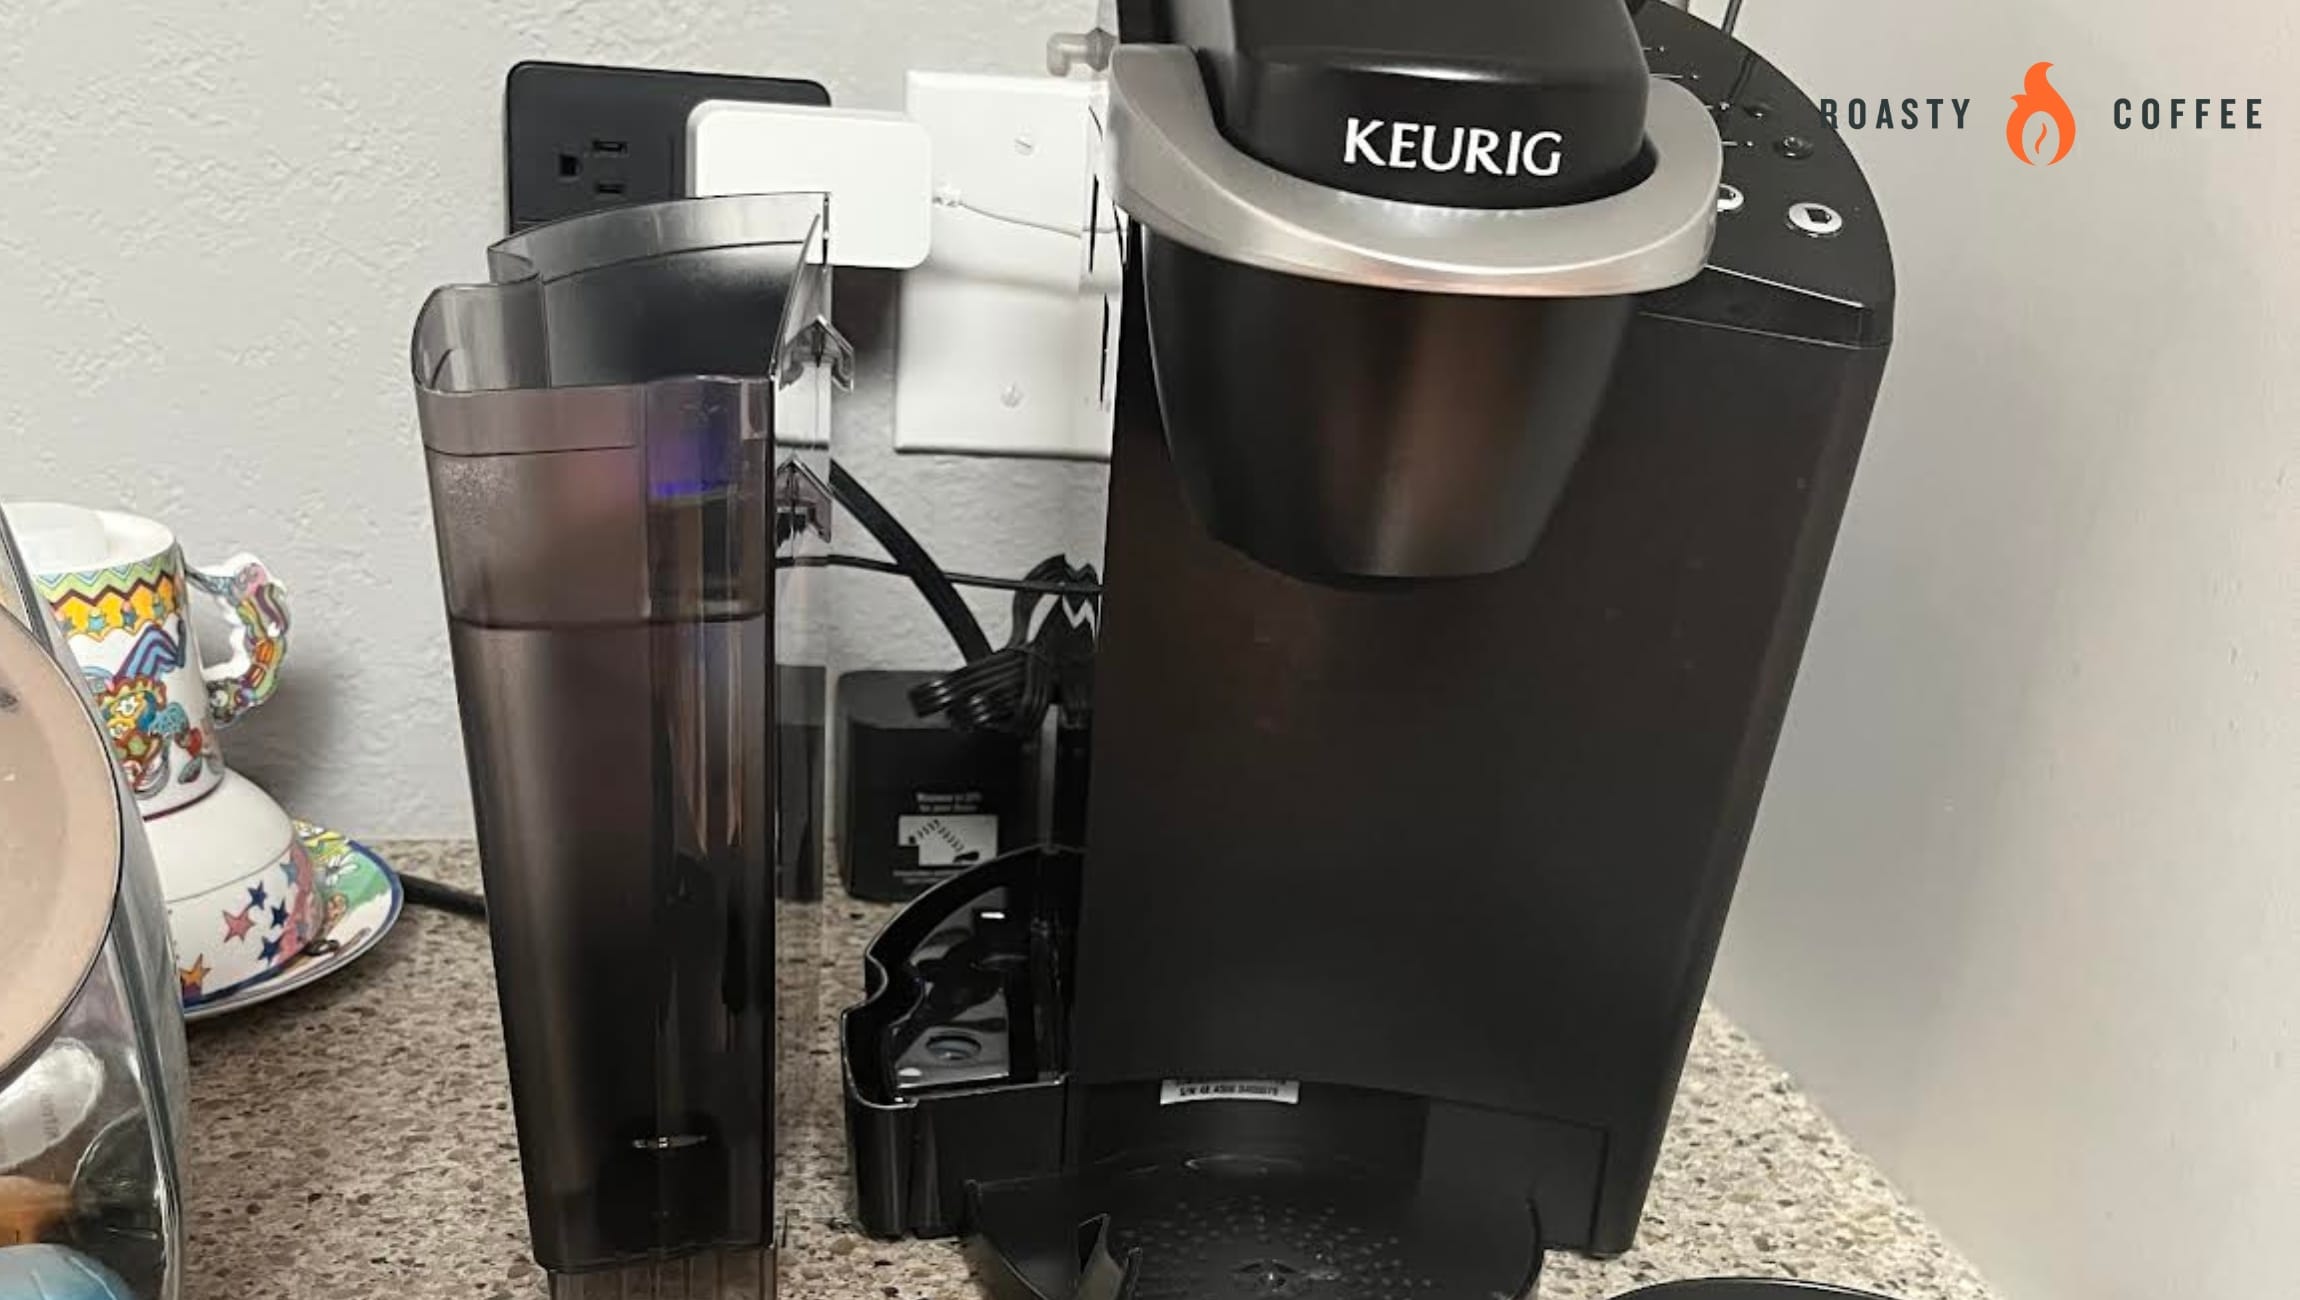 Problemas con la cafetera Keurig: su guía de solución